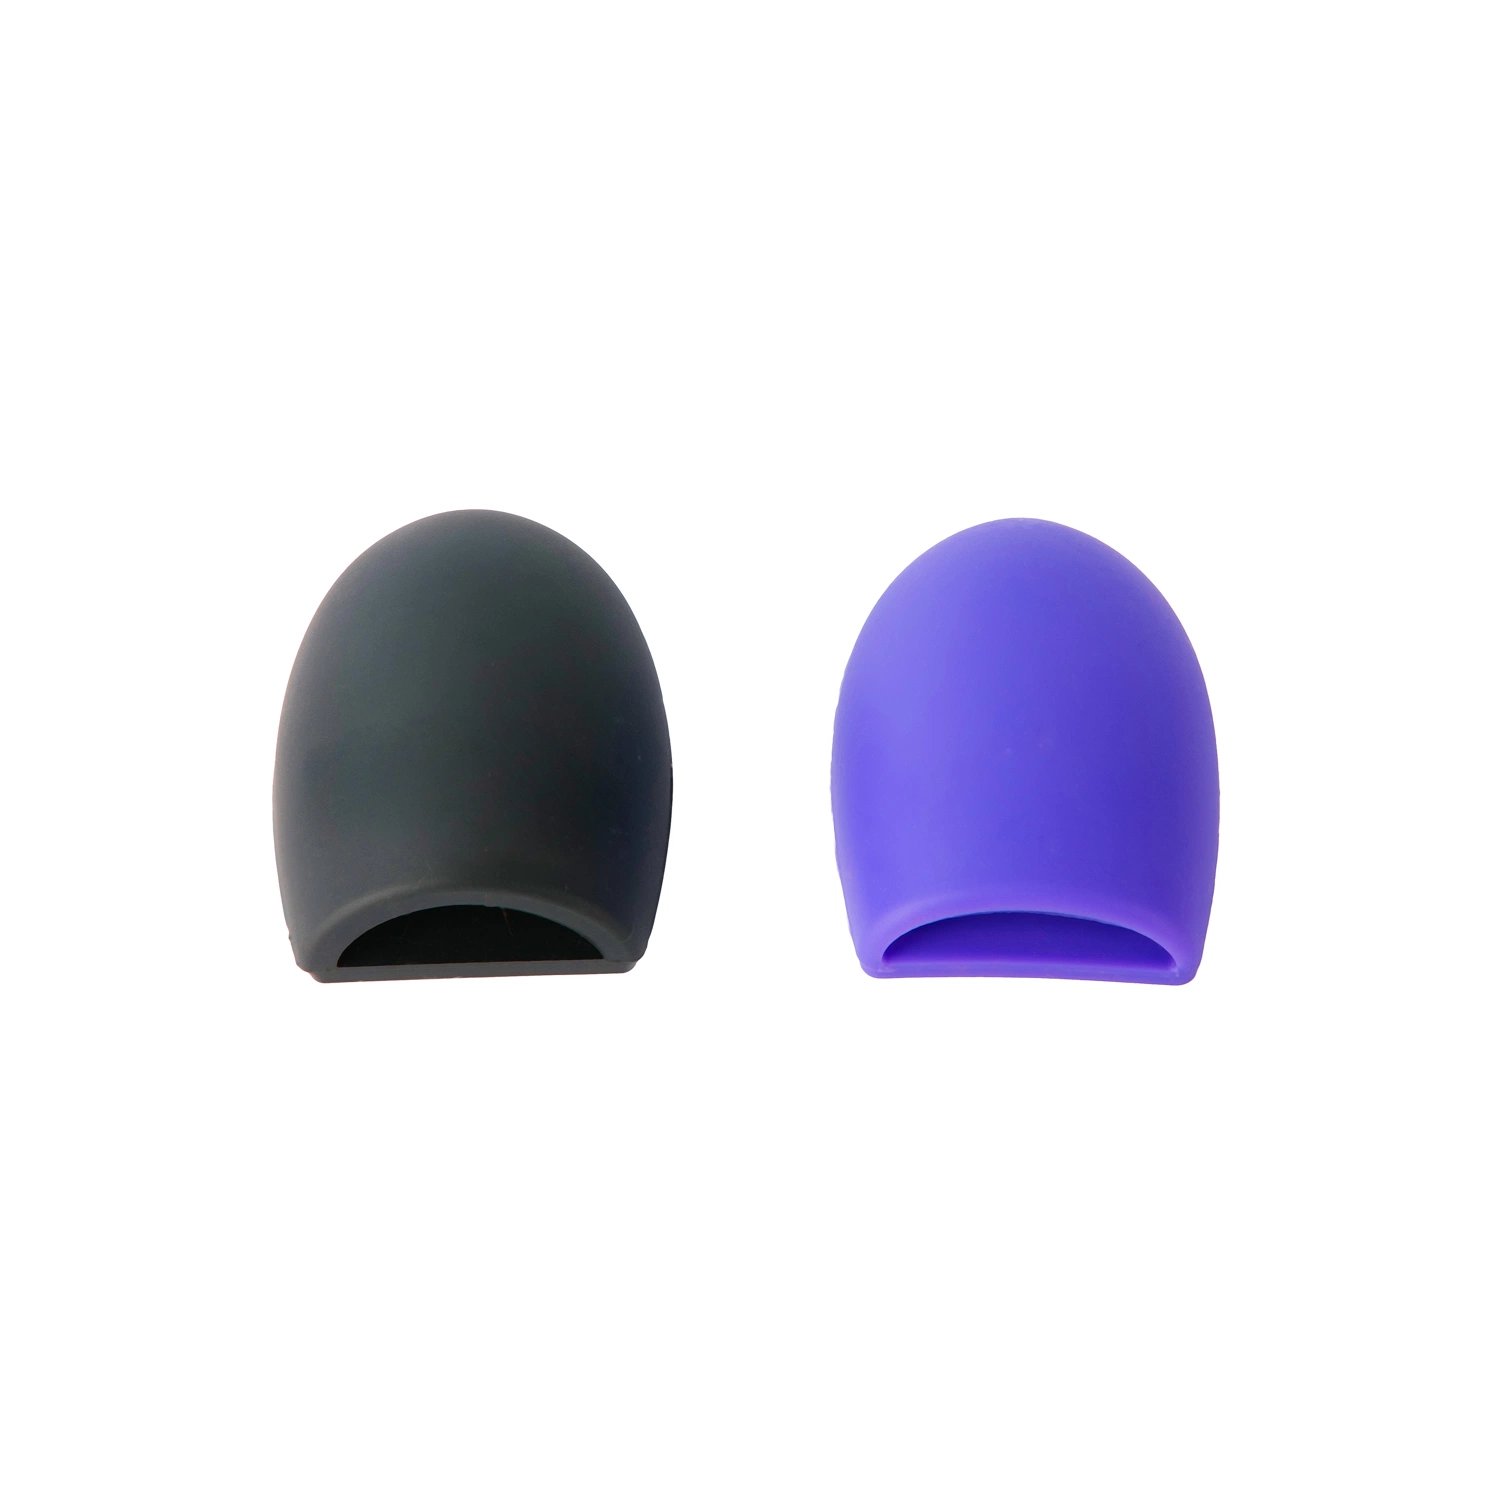 Tampon de nettoyage pour mini-brosse à maquillage multicolore en silicone, pour approvisionnement en usine Tapis de nettoyage pour brosse à maquillage